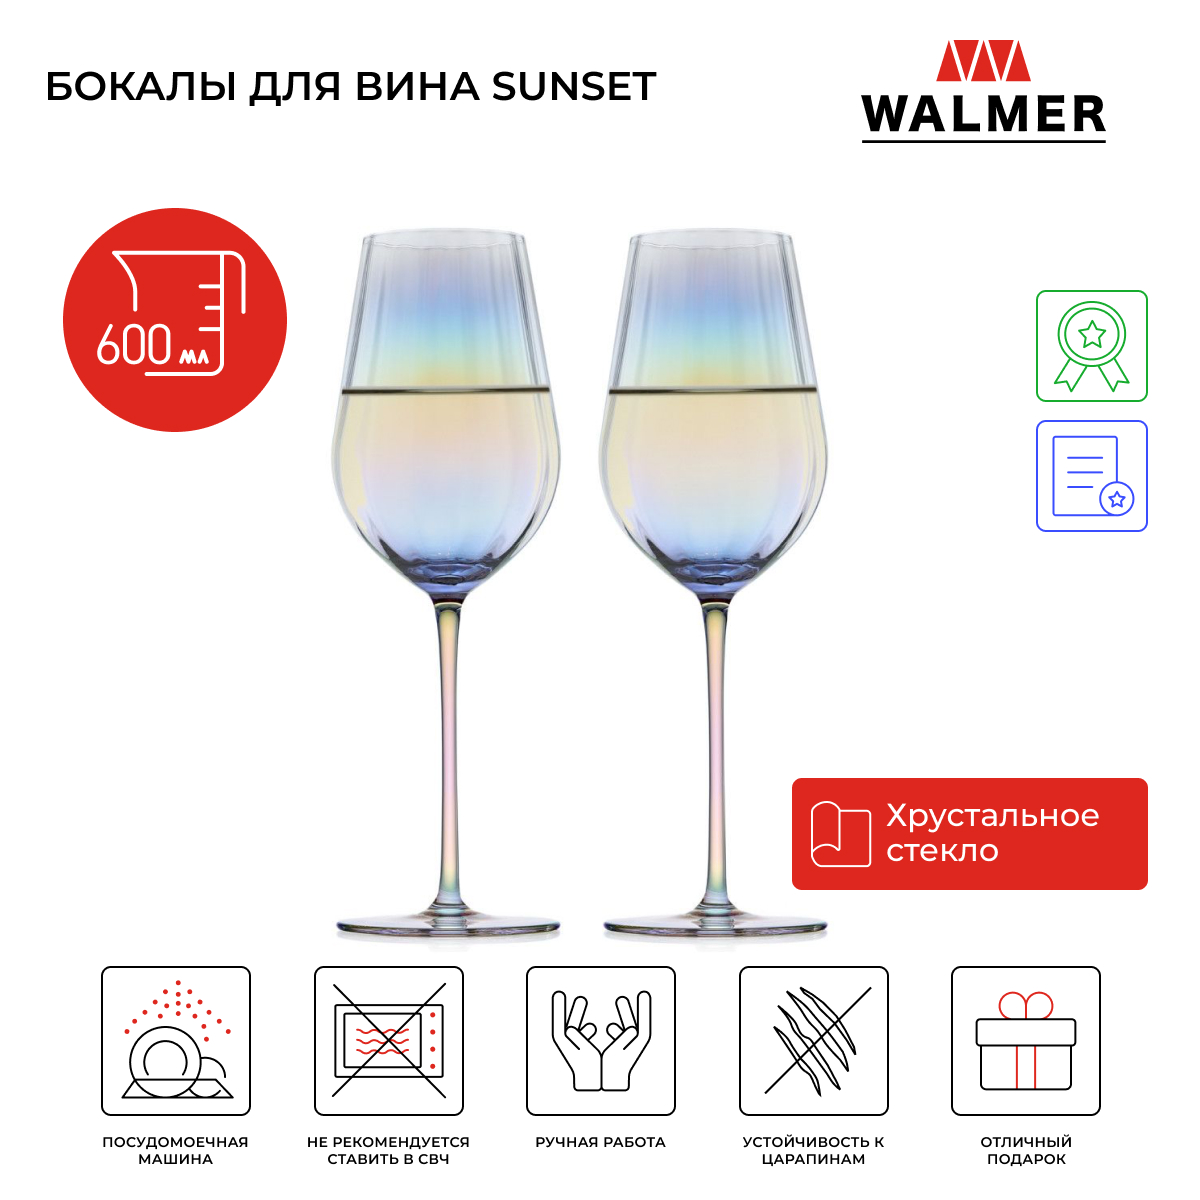 Набор бокалов для вина Walmer Sunset перламутр, 2 шт, 600 мл, W37000953